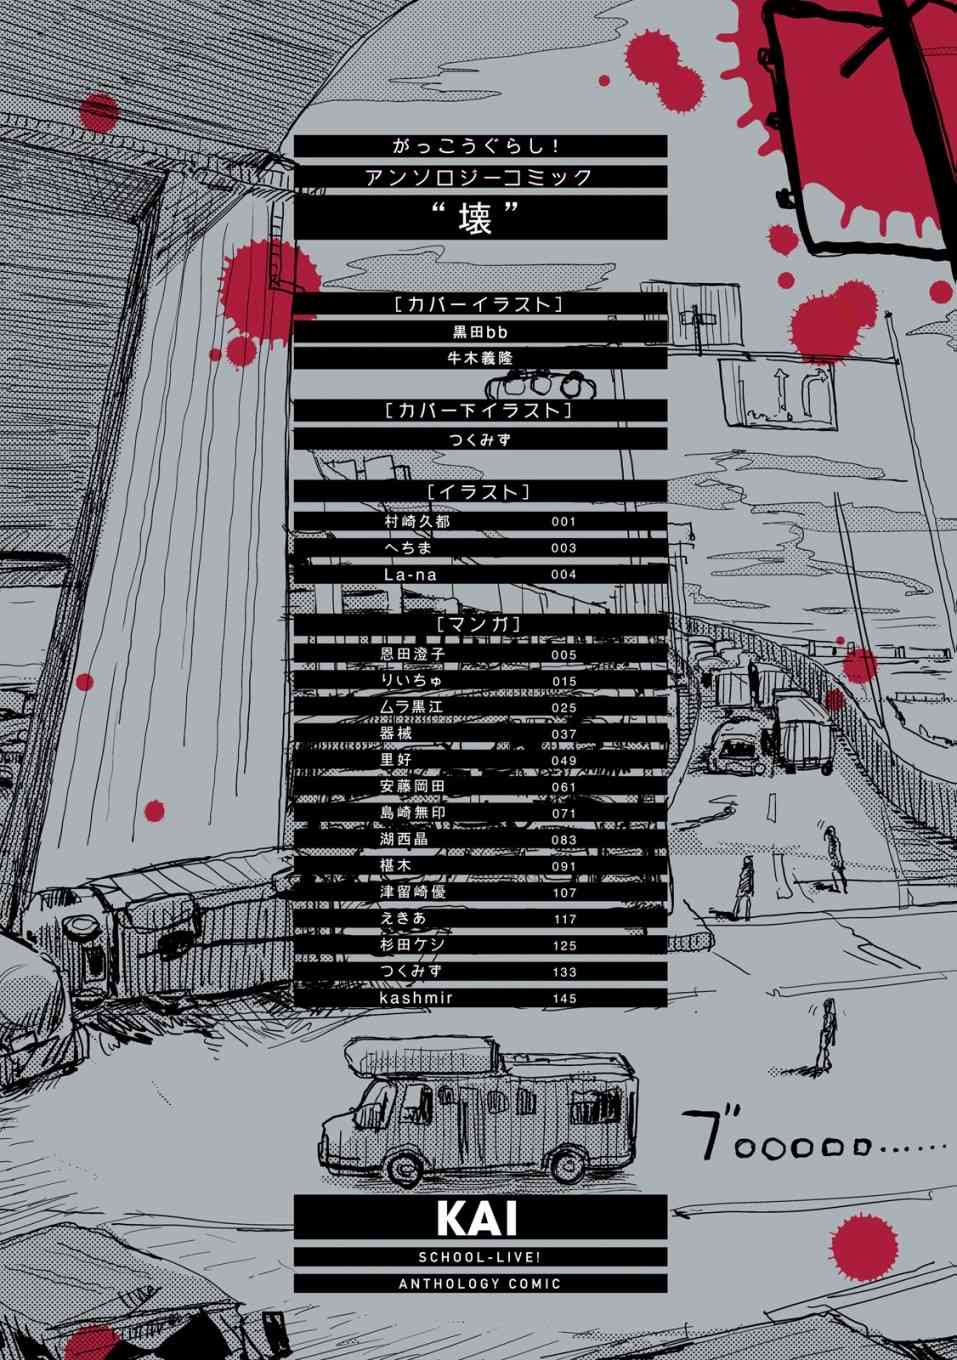 學園孤島 壞 - 封面&插頁漫畫 - 4